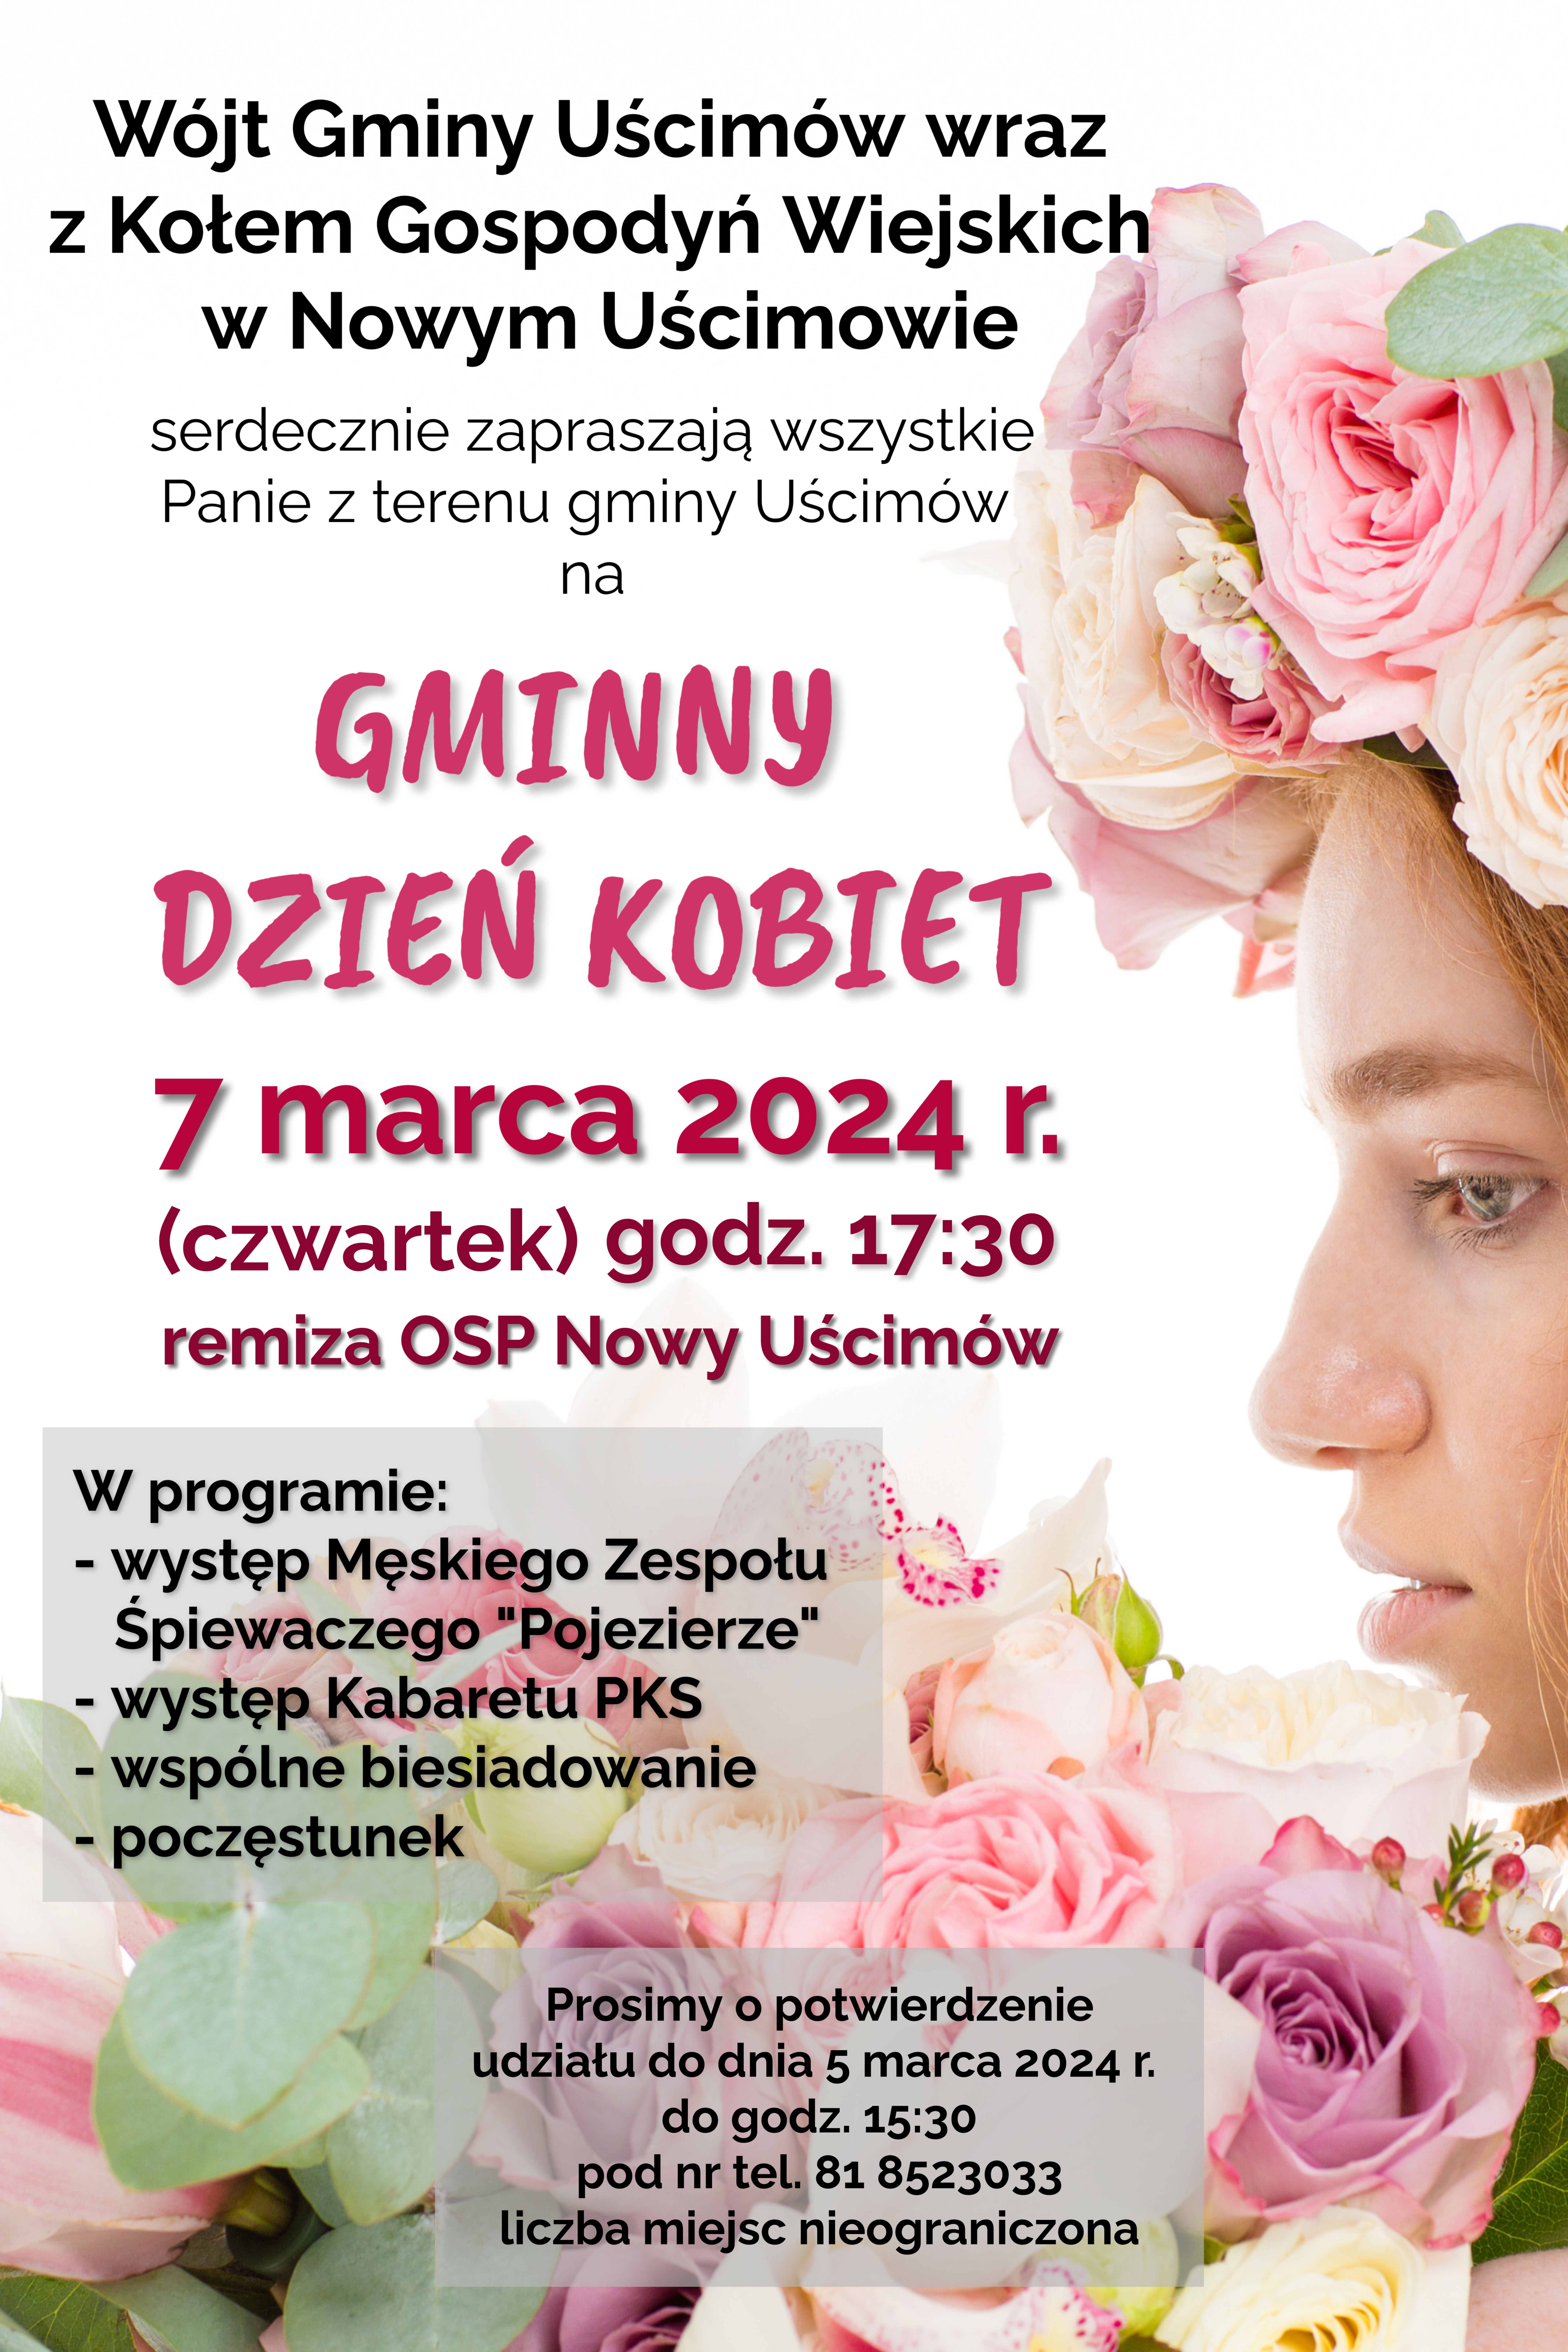 Plakat wydarzenia "Dzień Kobiet" z profilowym zdjęciem kobiety w kwiatowym wianku, szczegółowe informacje o evencie, datę i lokalizację.